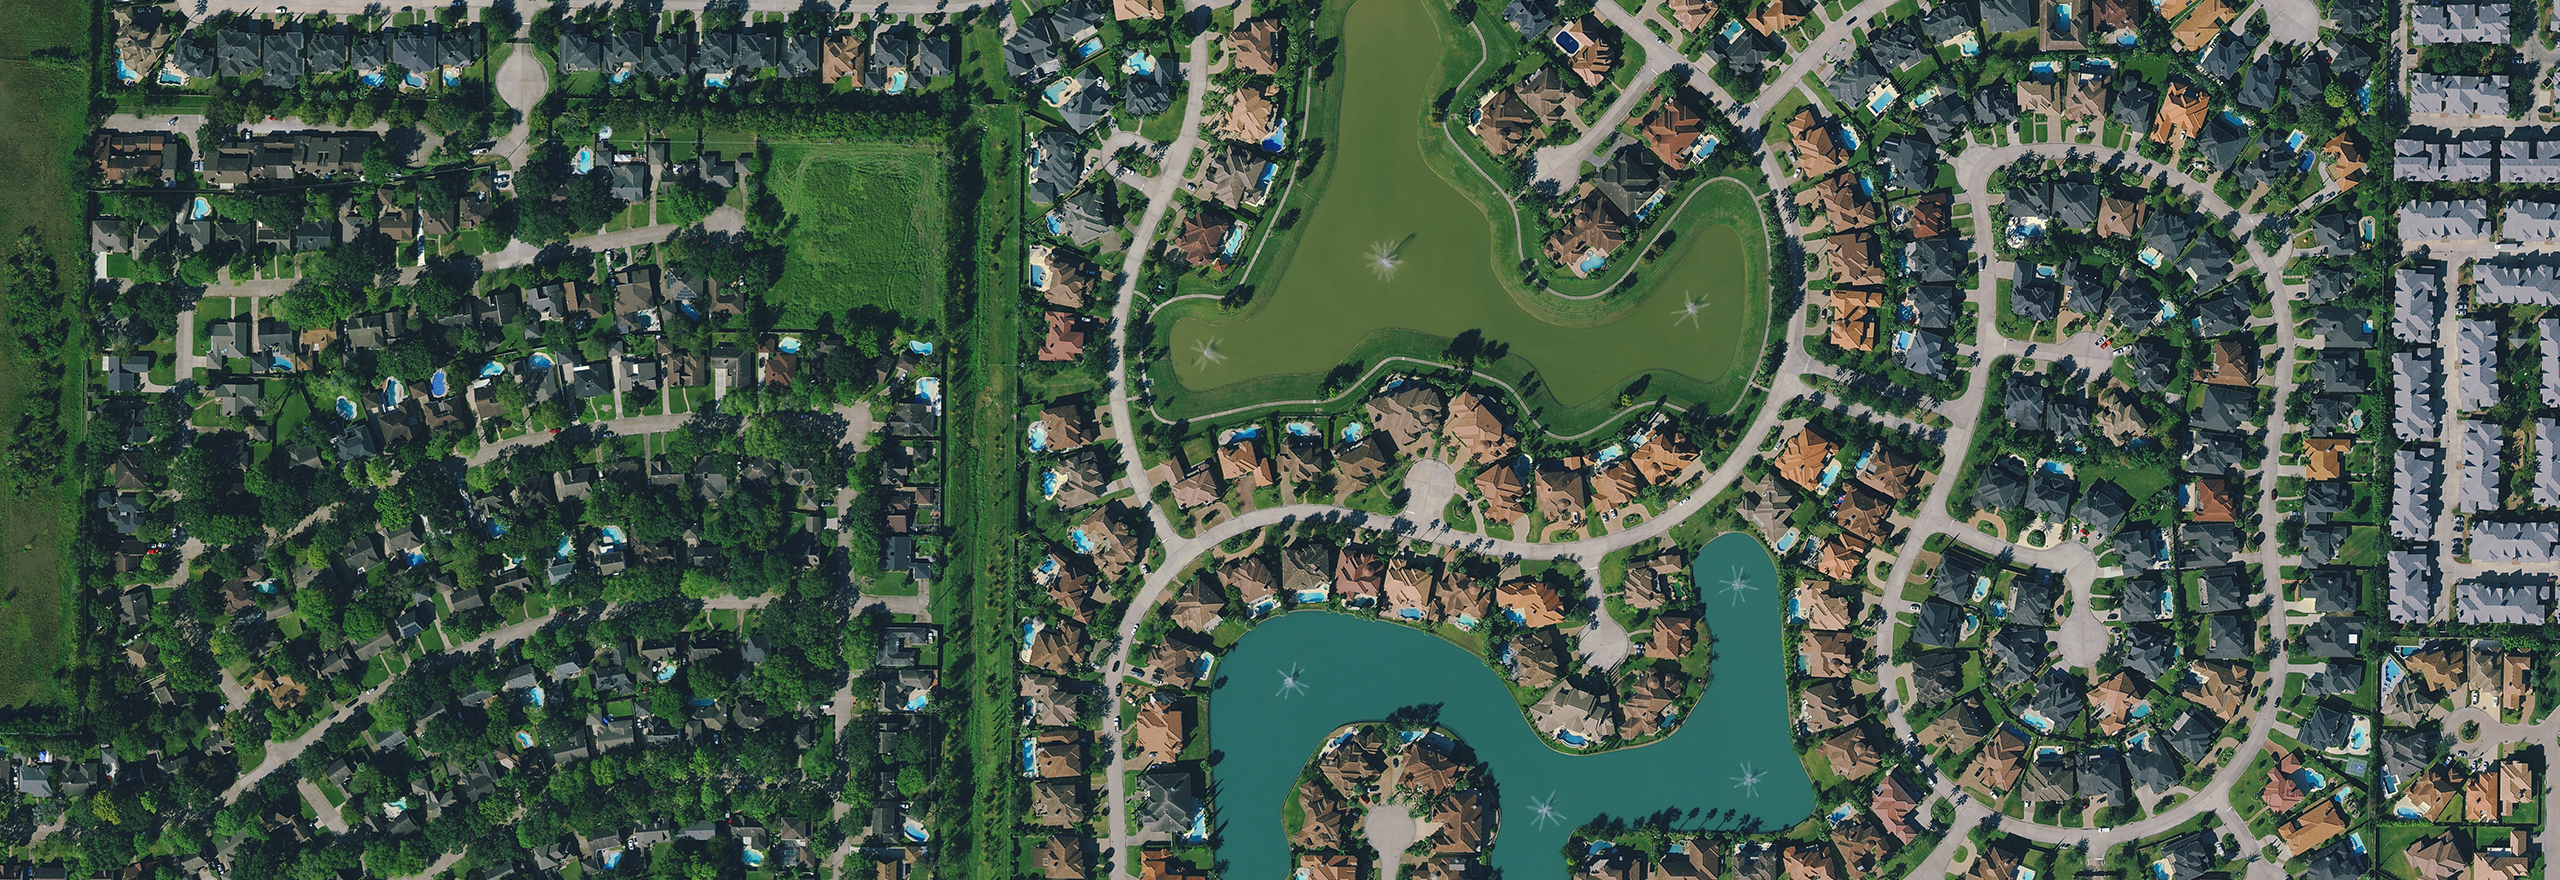 High-resolution aerial data of residential neighbourhoods